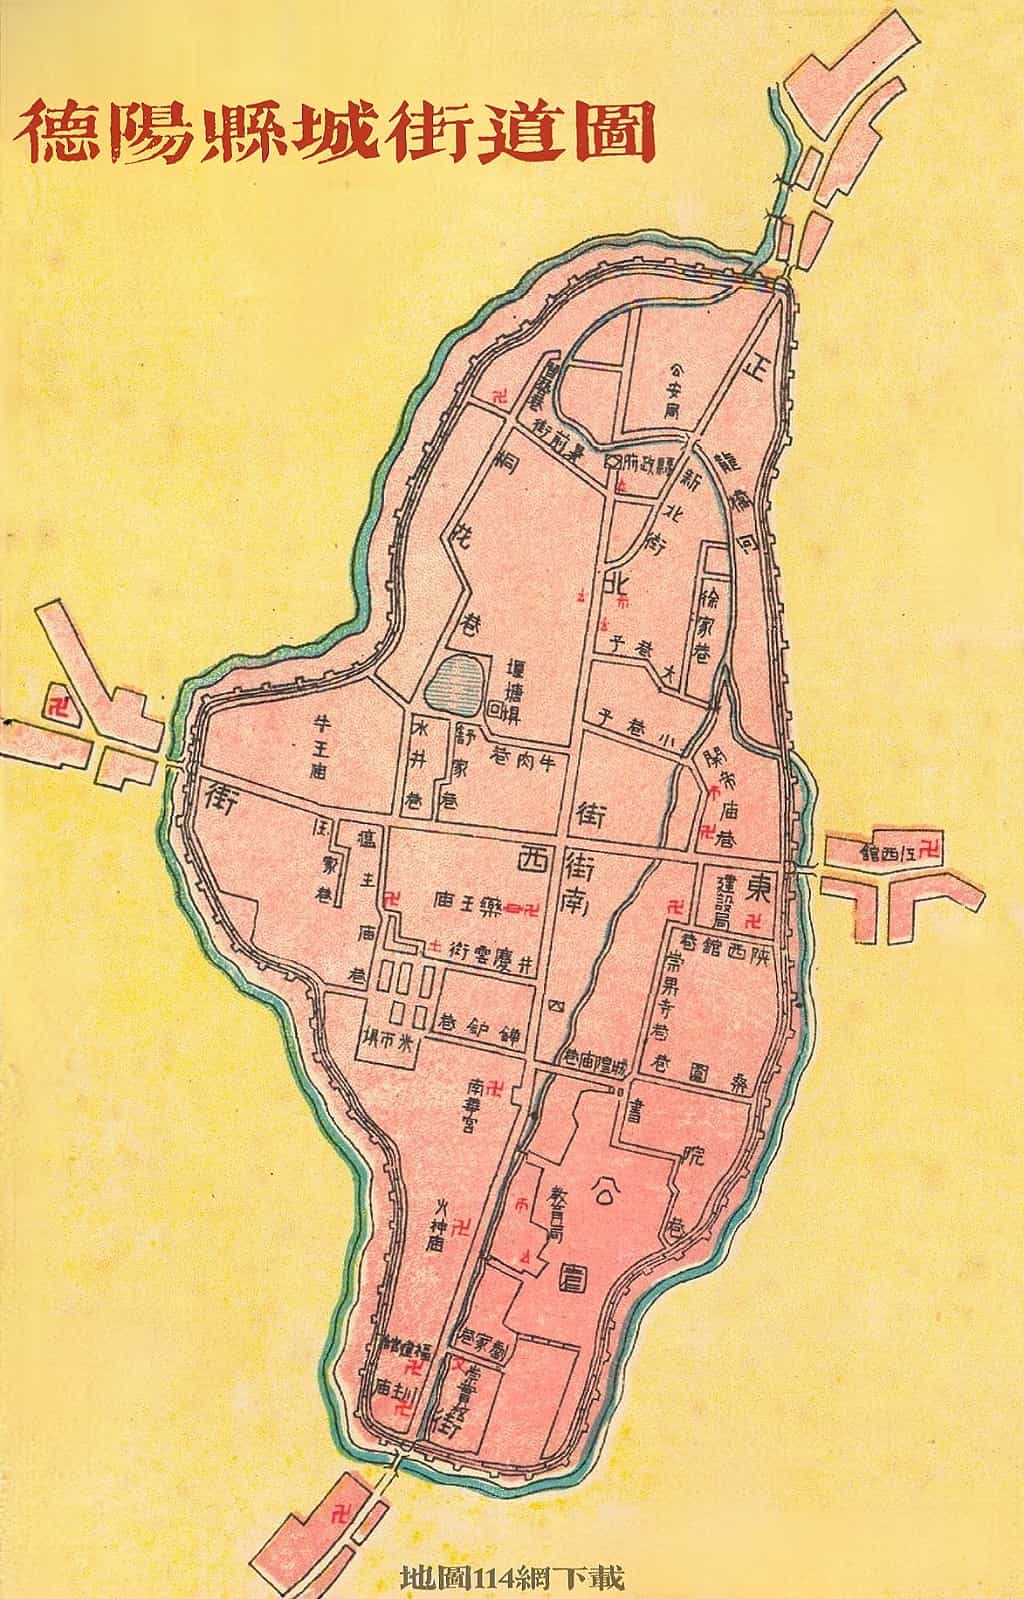 1934年德阳县城街道图.jpg